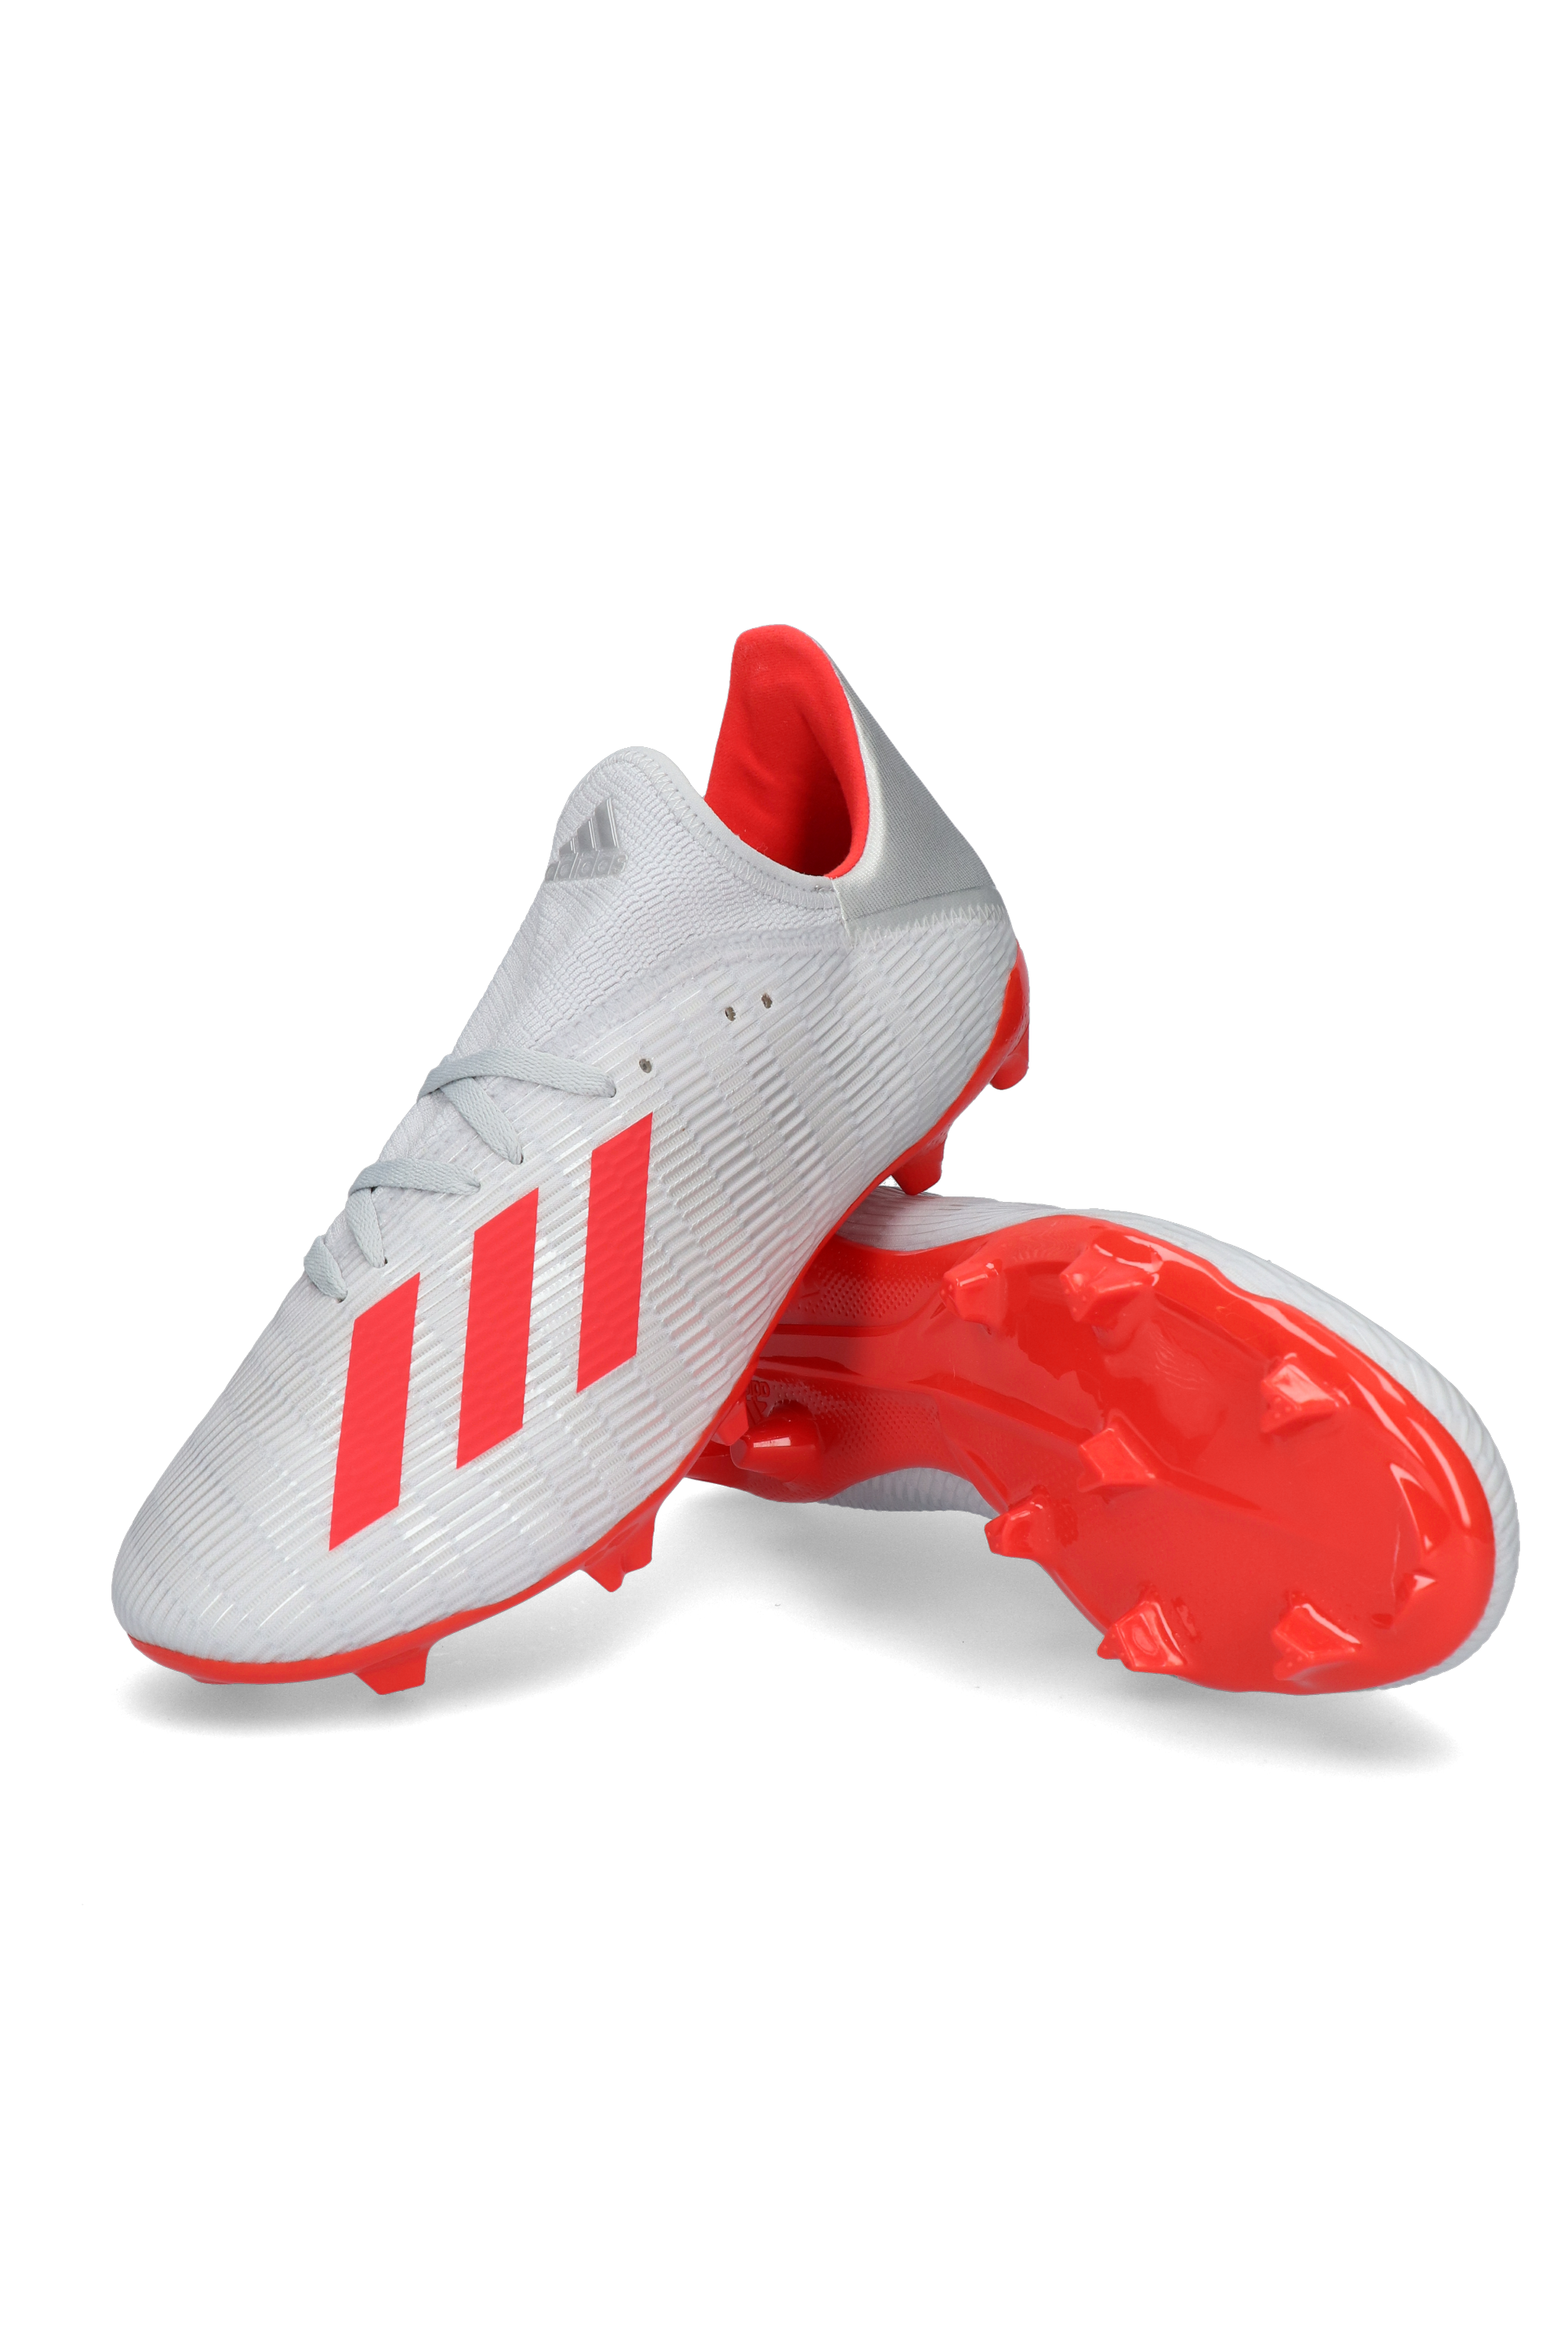 ESPECIAL TALLAS GRANDES Adidas X 19.3 IN - Zapatillas de fútbol sala hombre  brcyan/cblack/shopnk - Private Sport Shop